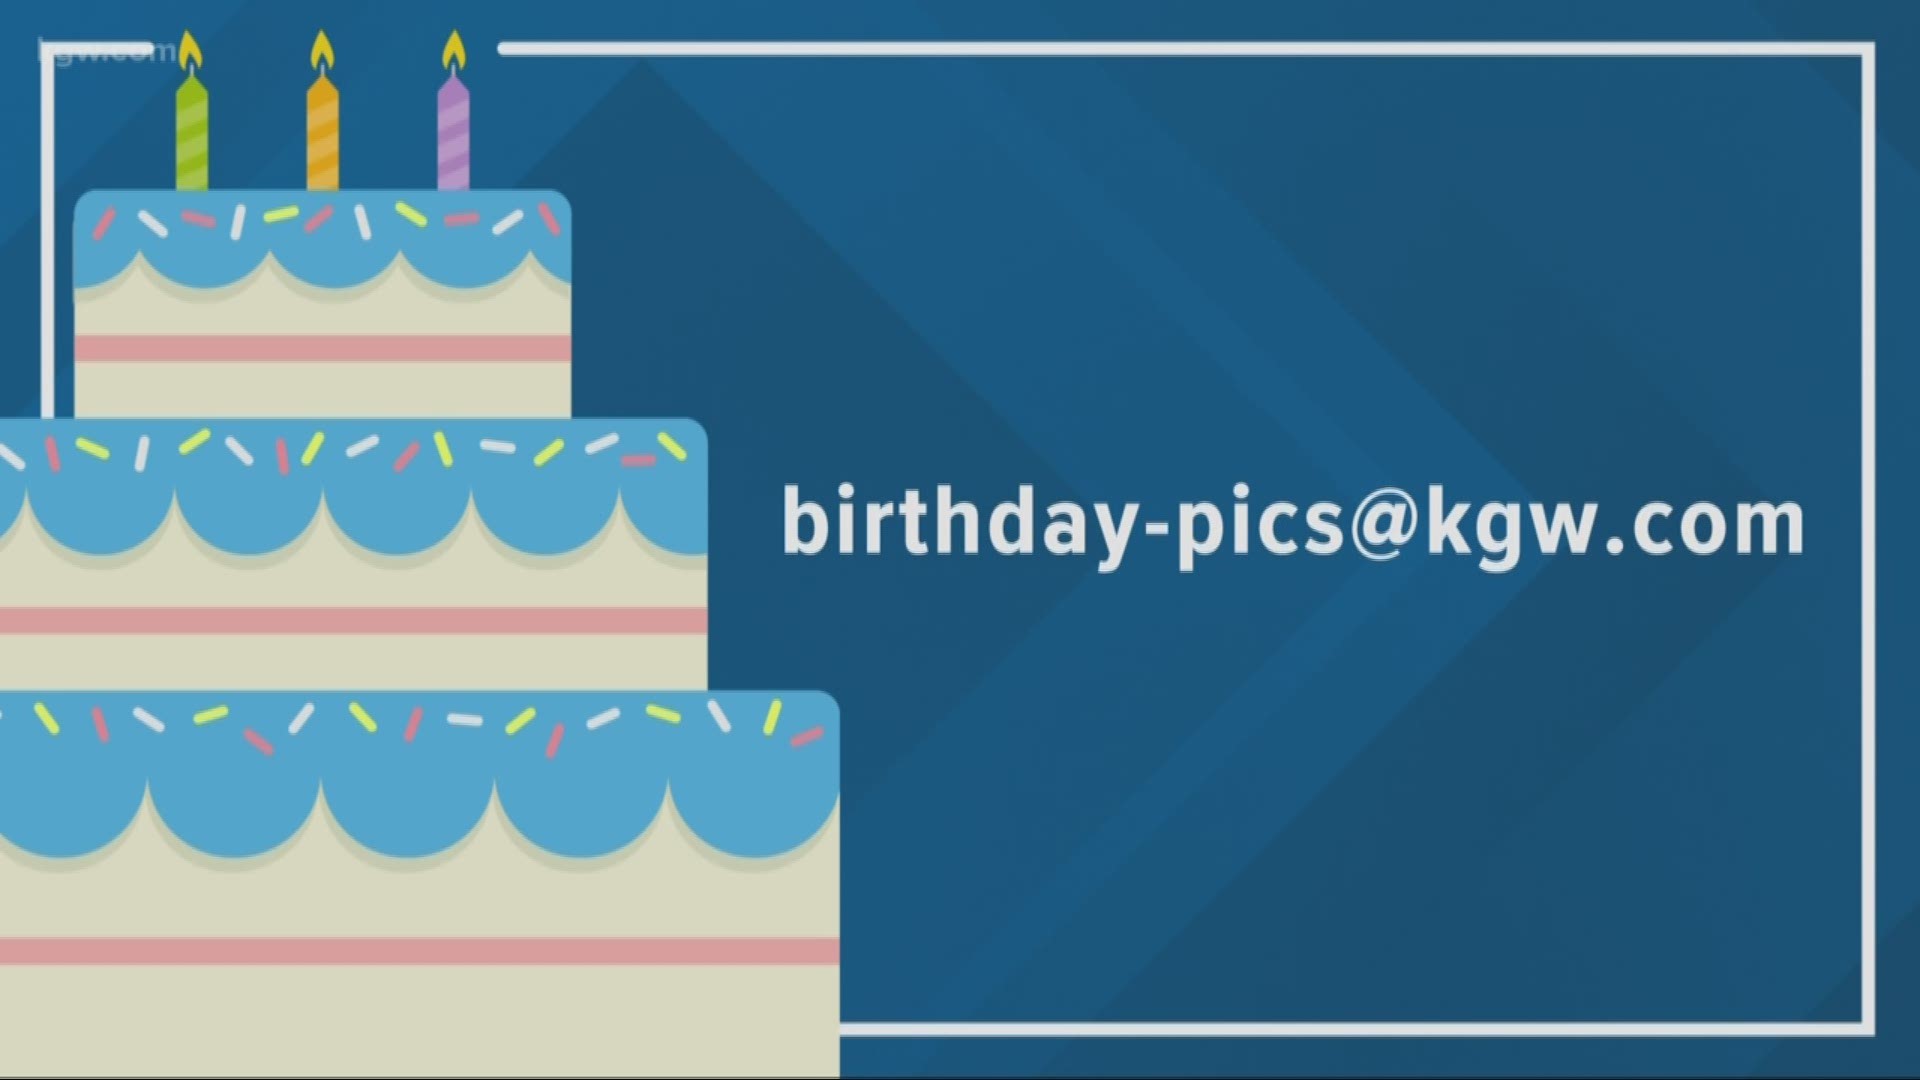 KGW viewer birthdays: 9-19-19